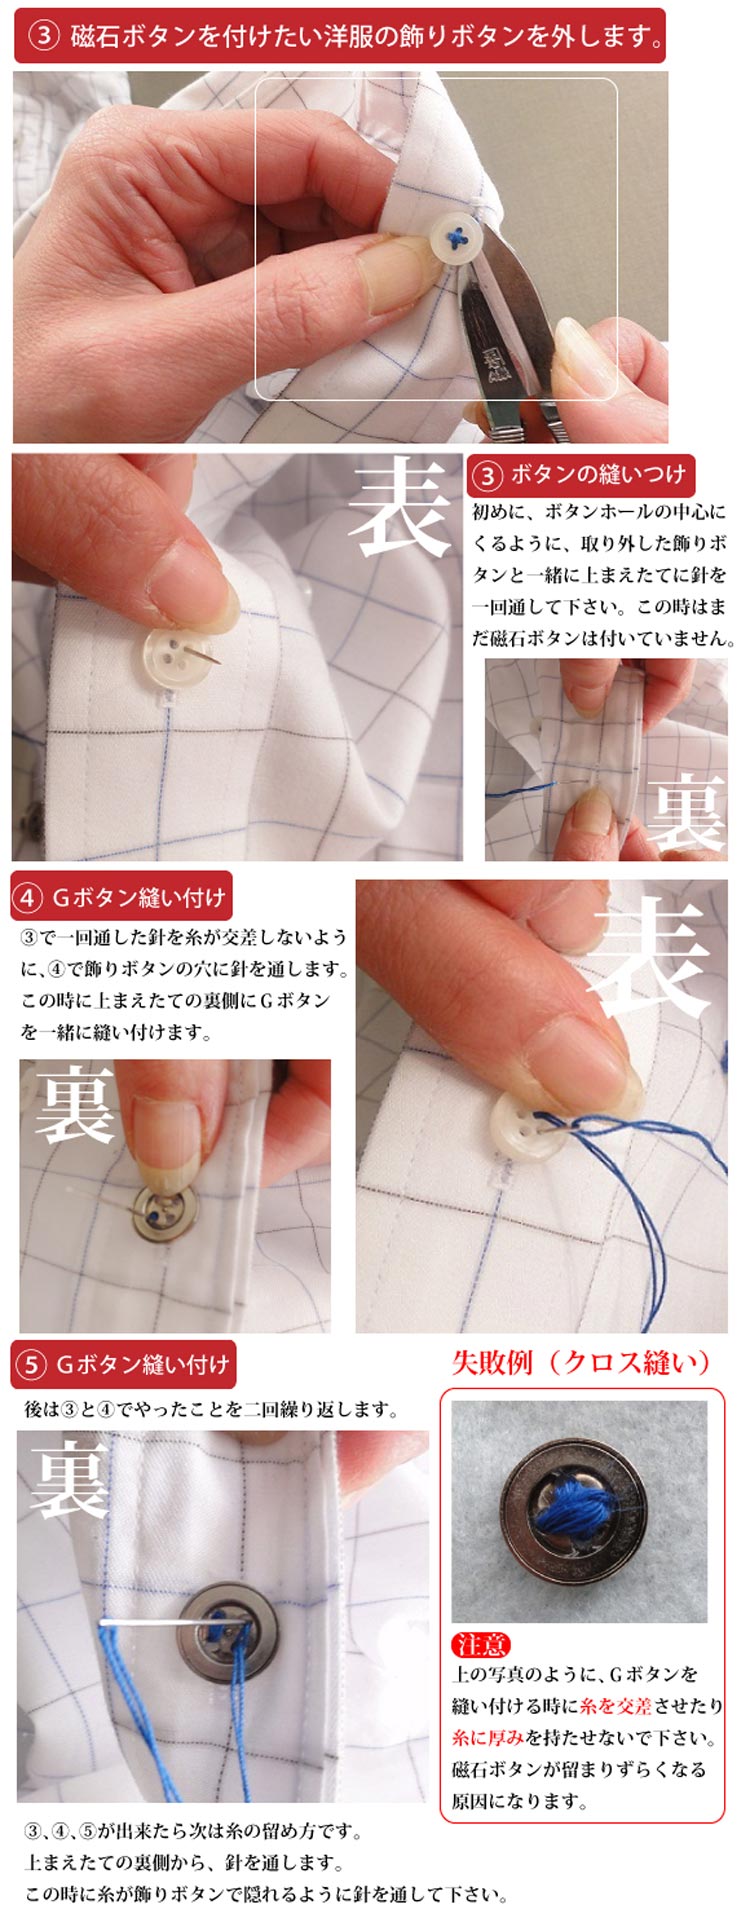 Gボタン縫い付け方法